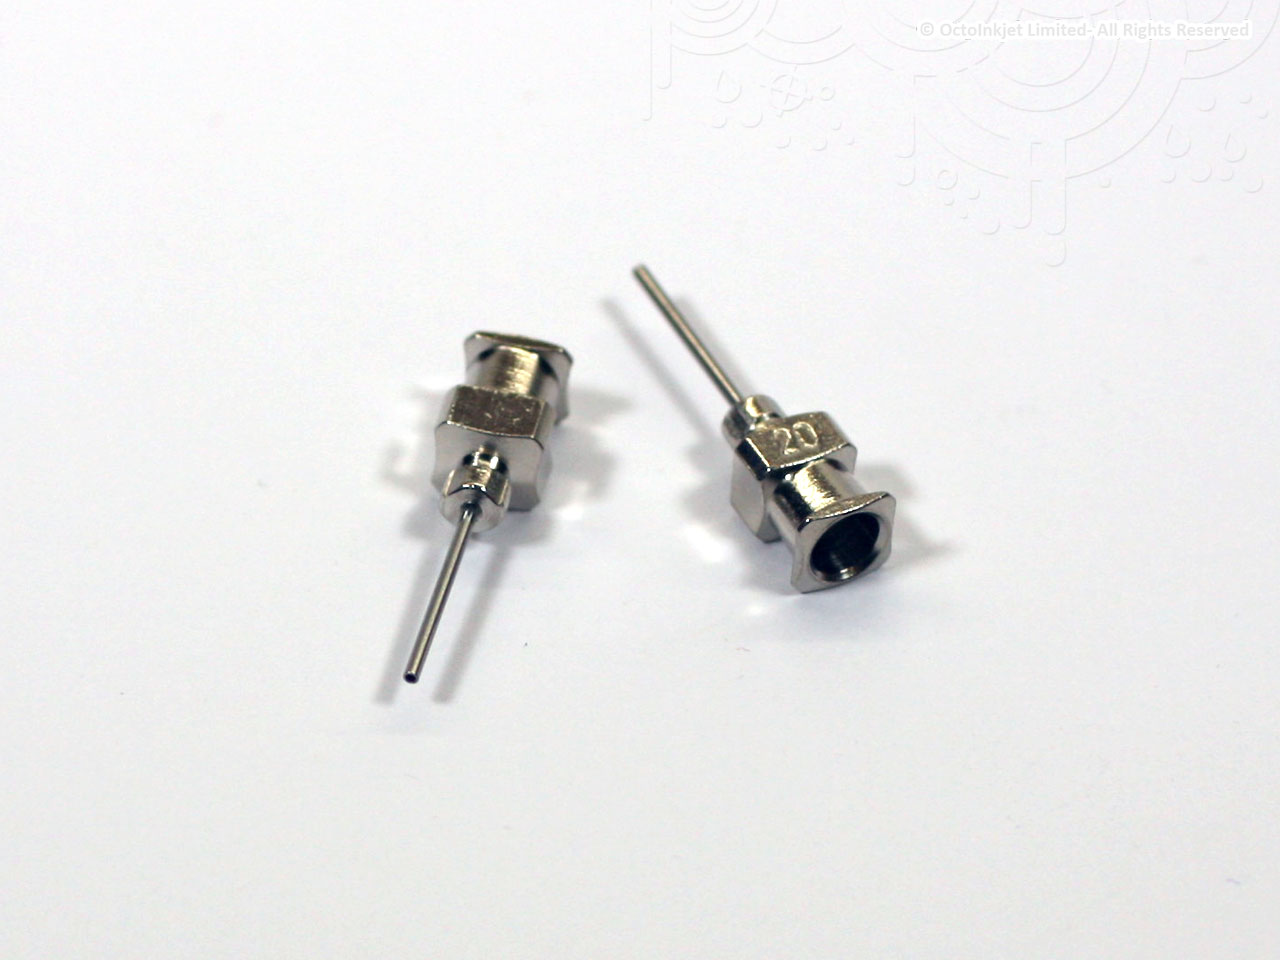 20G All Metal Hub & Needle 0.5inch (13mm) • NeedlEZ.co.uk